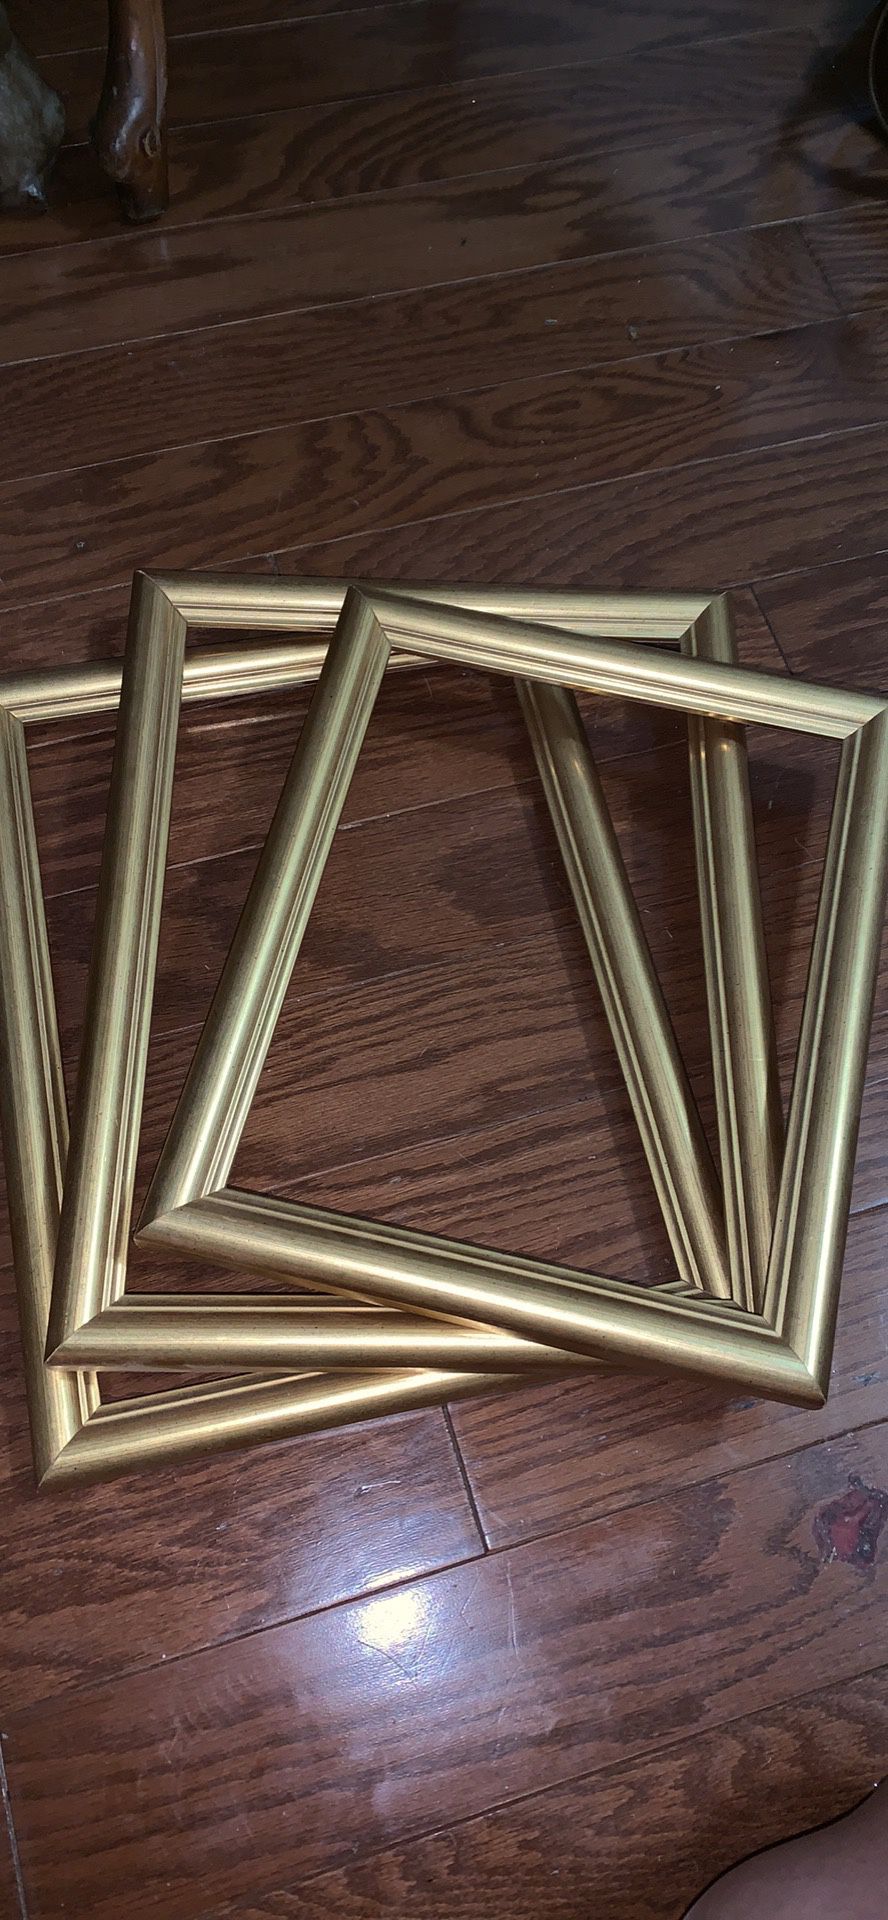 3 gold frames